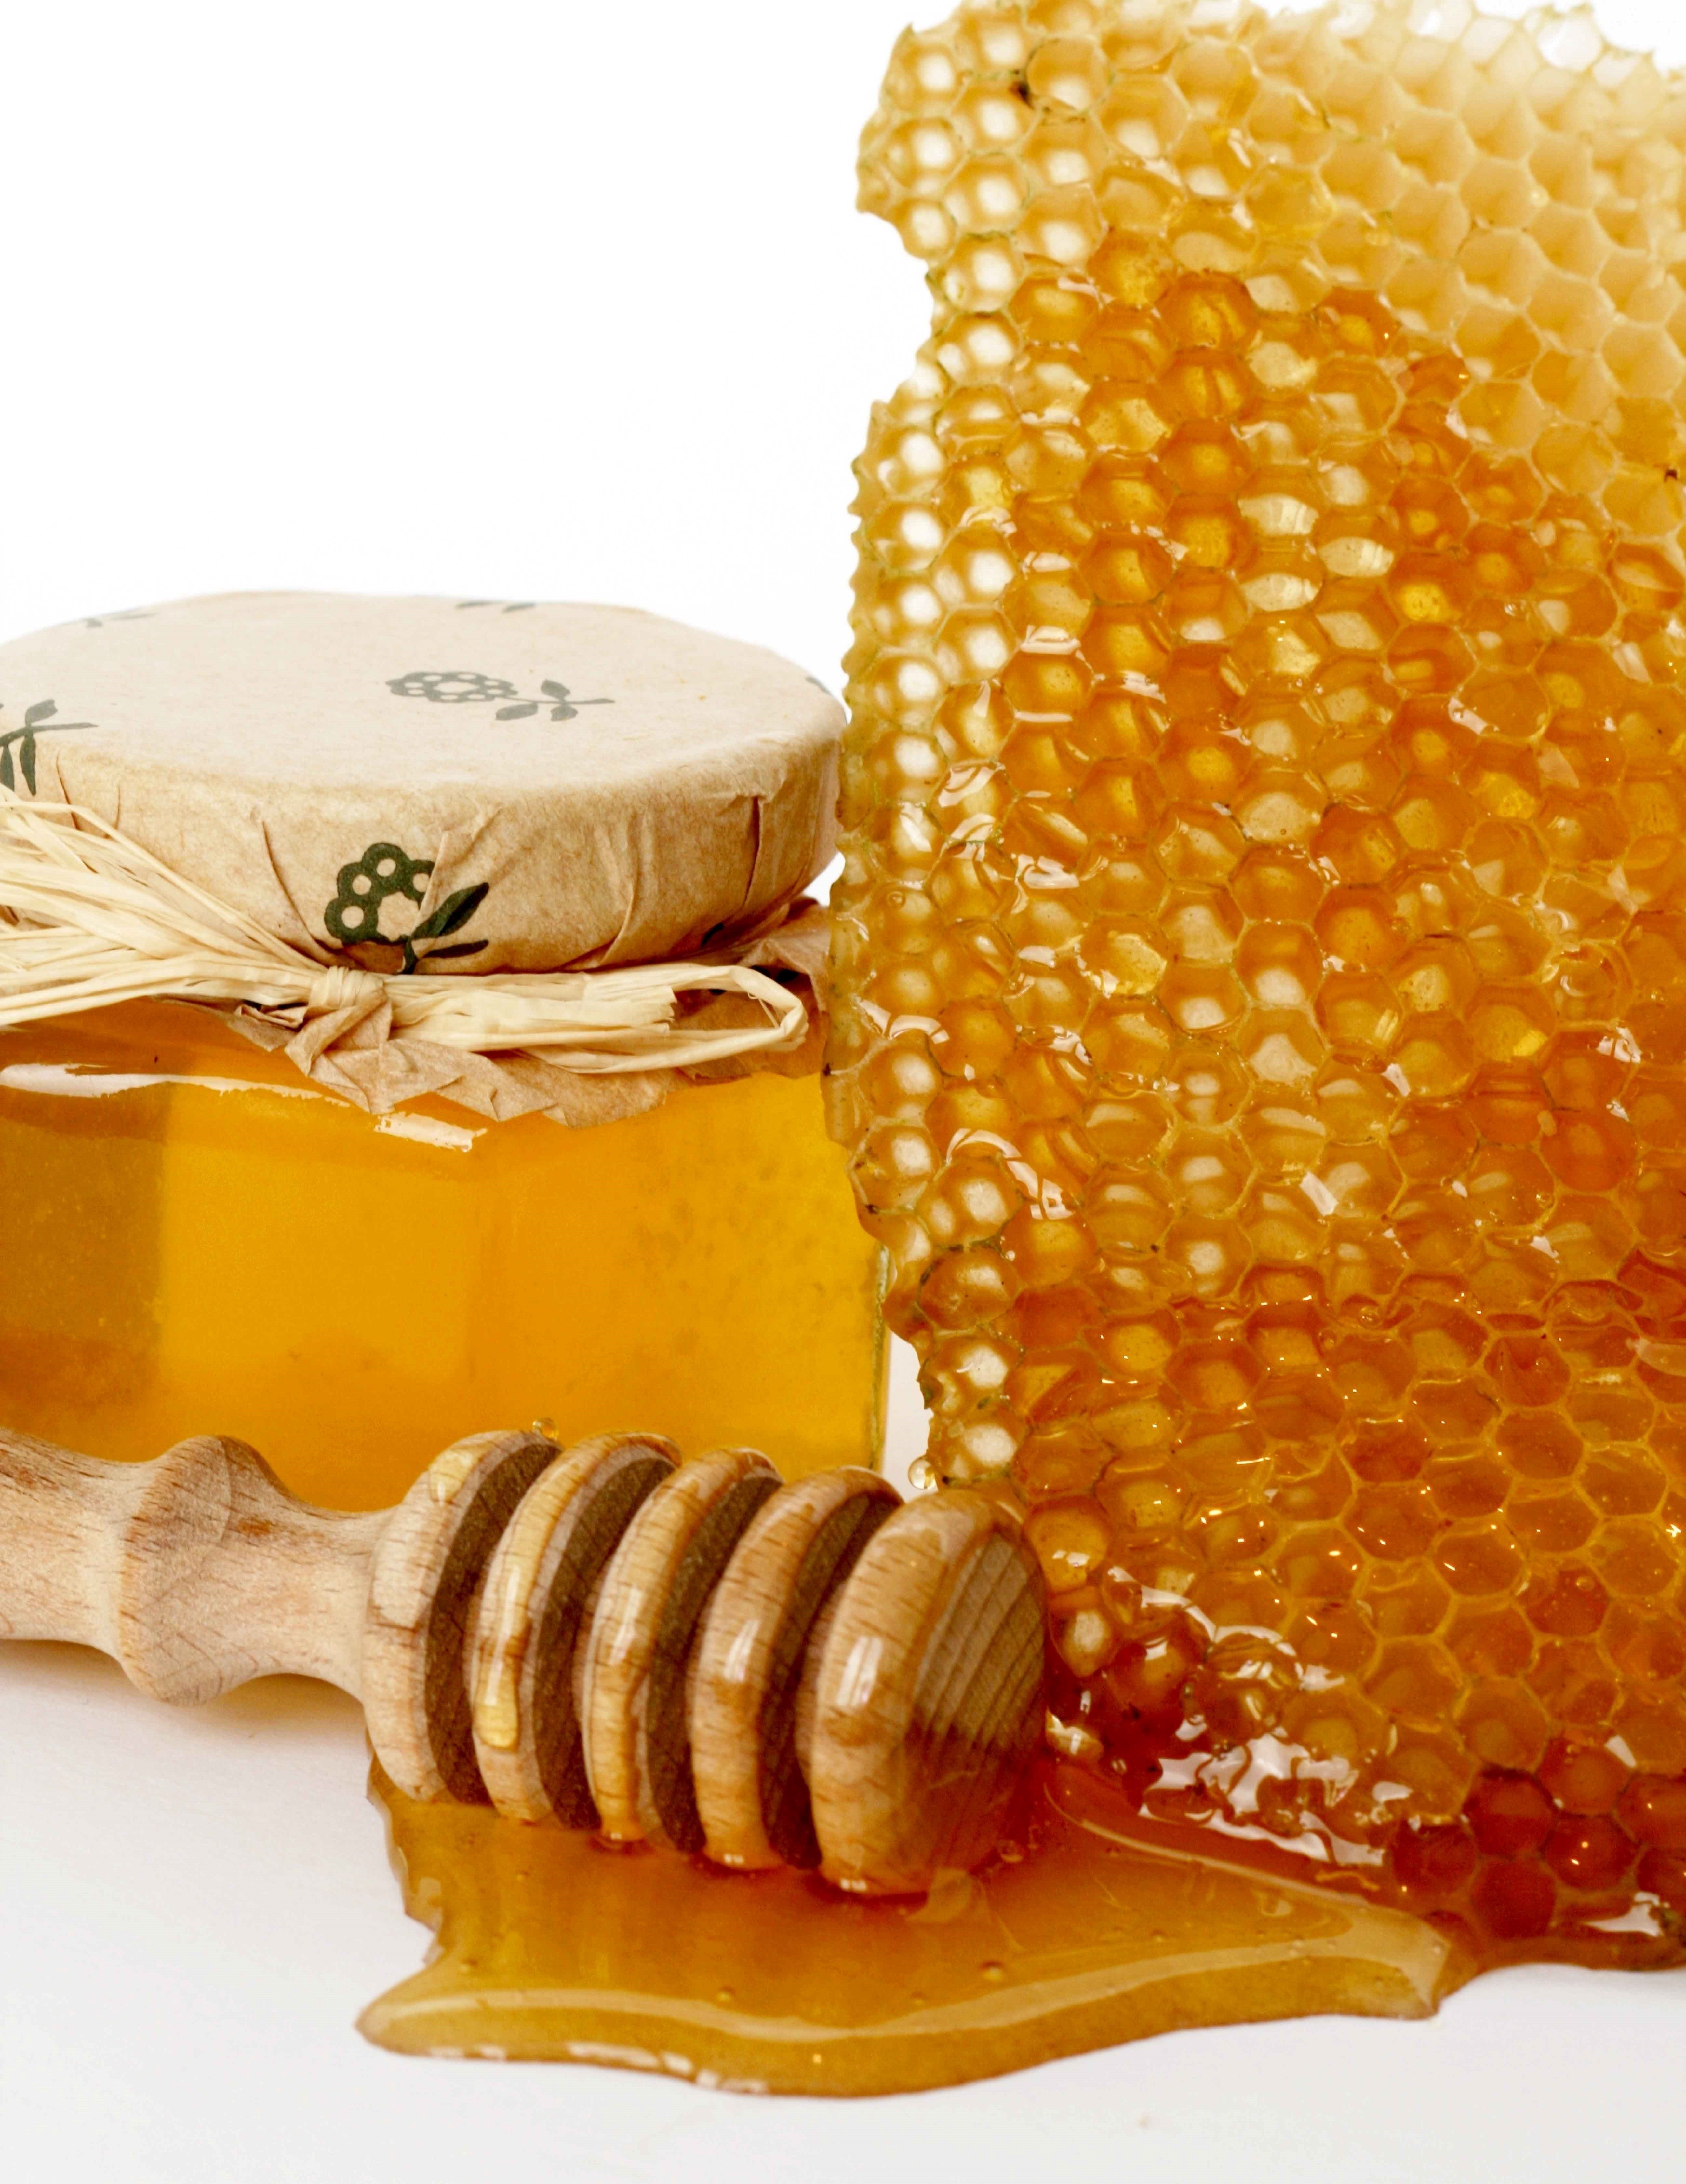 Бешеный мед. Соты меда. Пчелиный мёд. Мёд и продукты пчеловодства. Красивый мед.